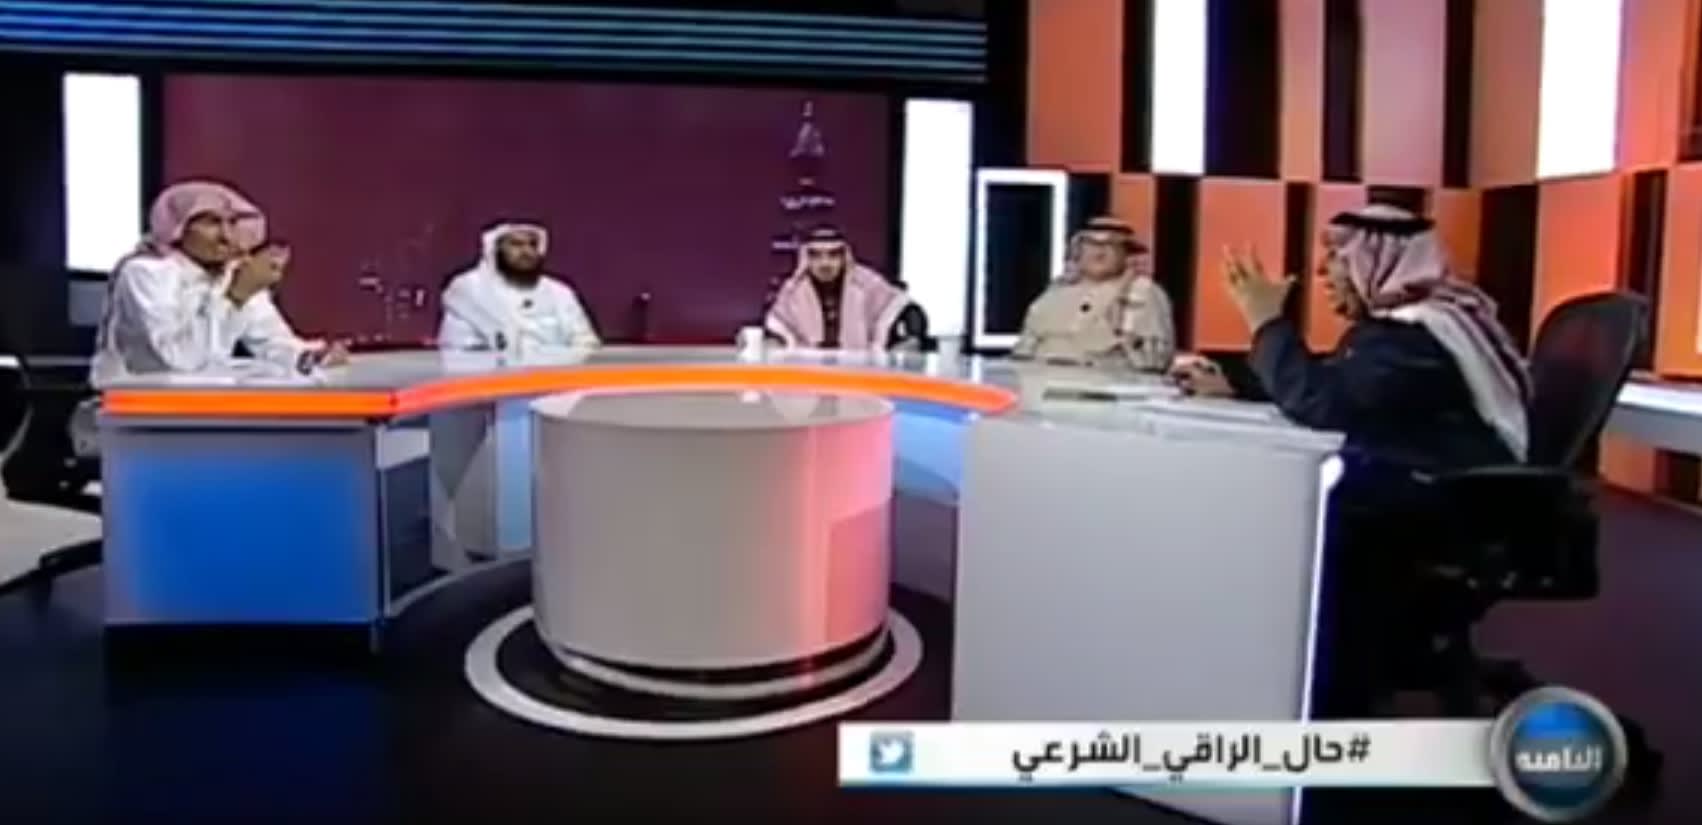 "جن على الهواء" في برنامج الثامنة.. ومفتي عام السعودية: أغلب الرقاة لا يجيدون قراءة الفاتحة